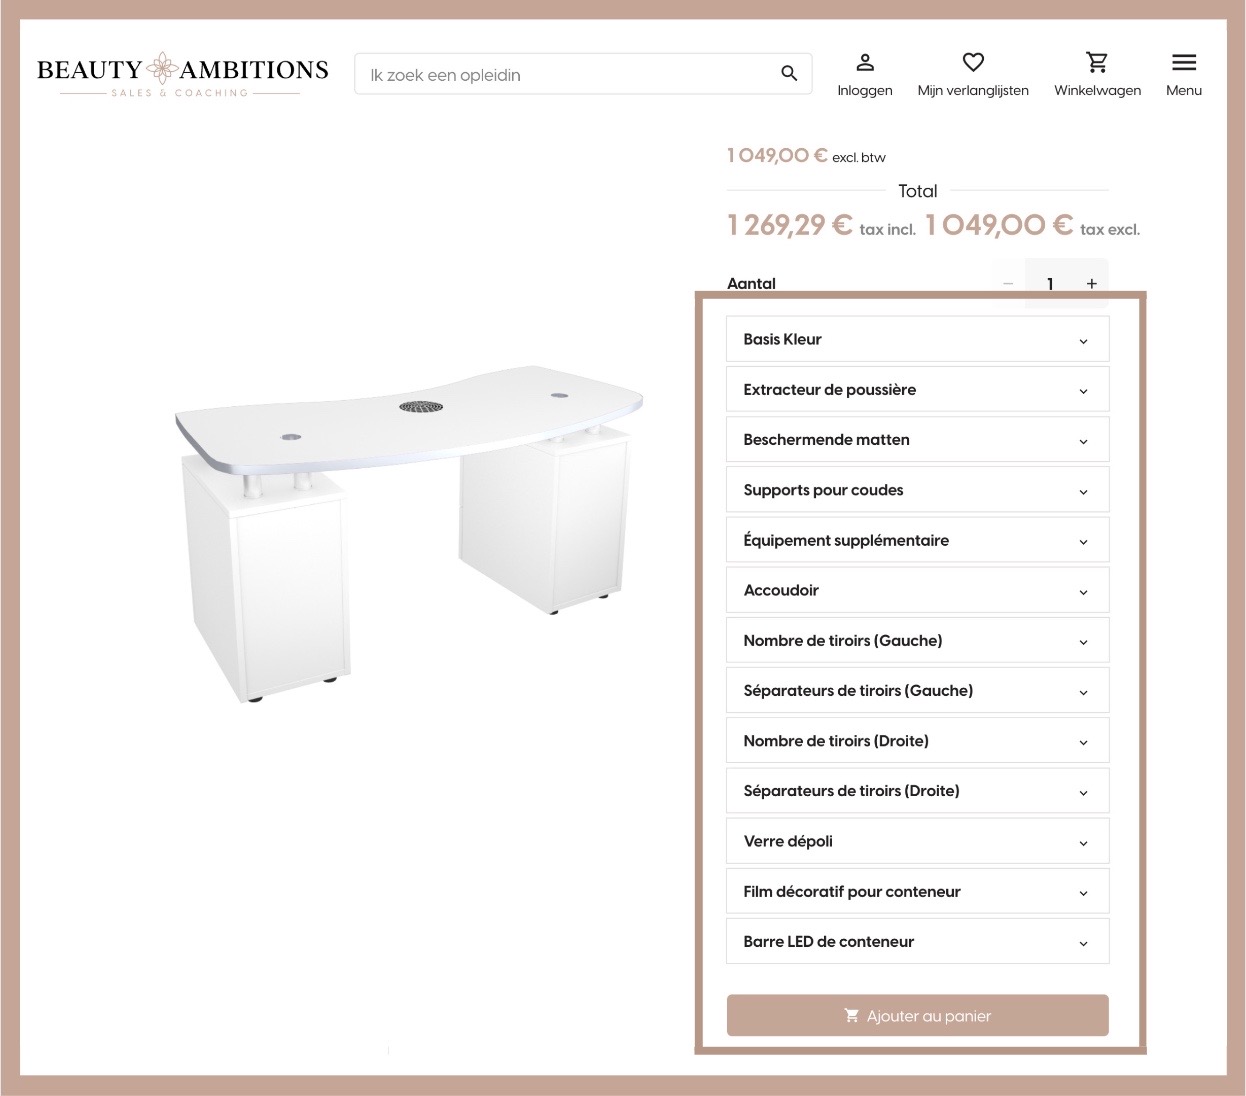 Nova Flair manicure tafel voorbeeld product pagina met het personalisatie paneel geaccentueerd